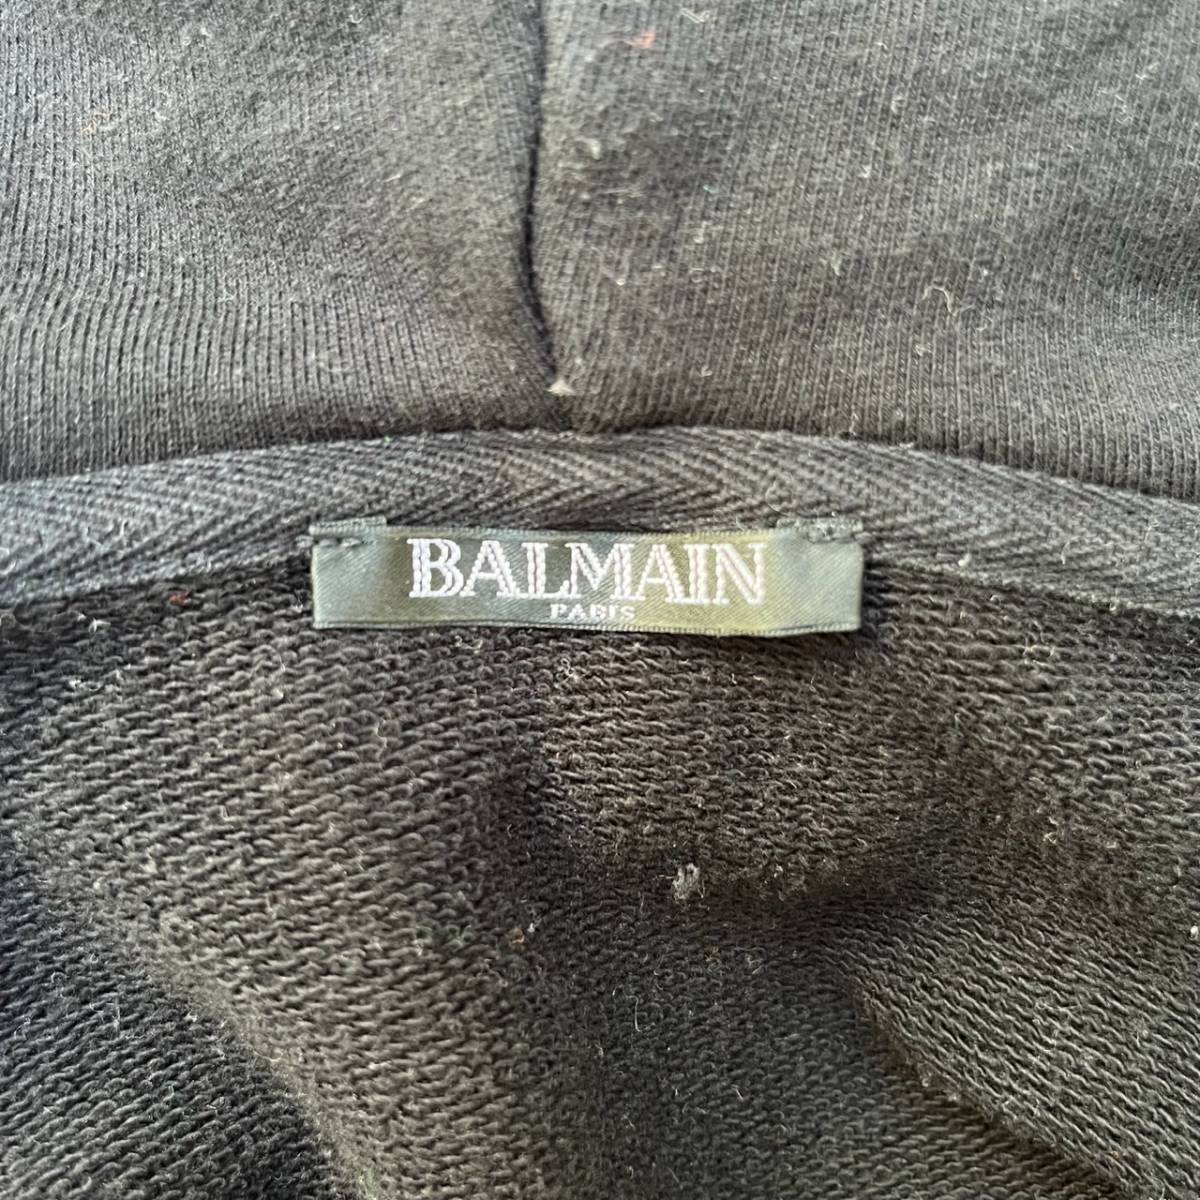 BALMAIN バルマン Sサイズ ジップアップパーカー ロゴテープ サイドジップ ブラック